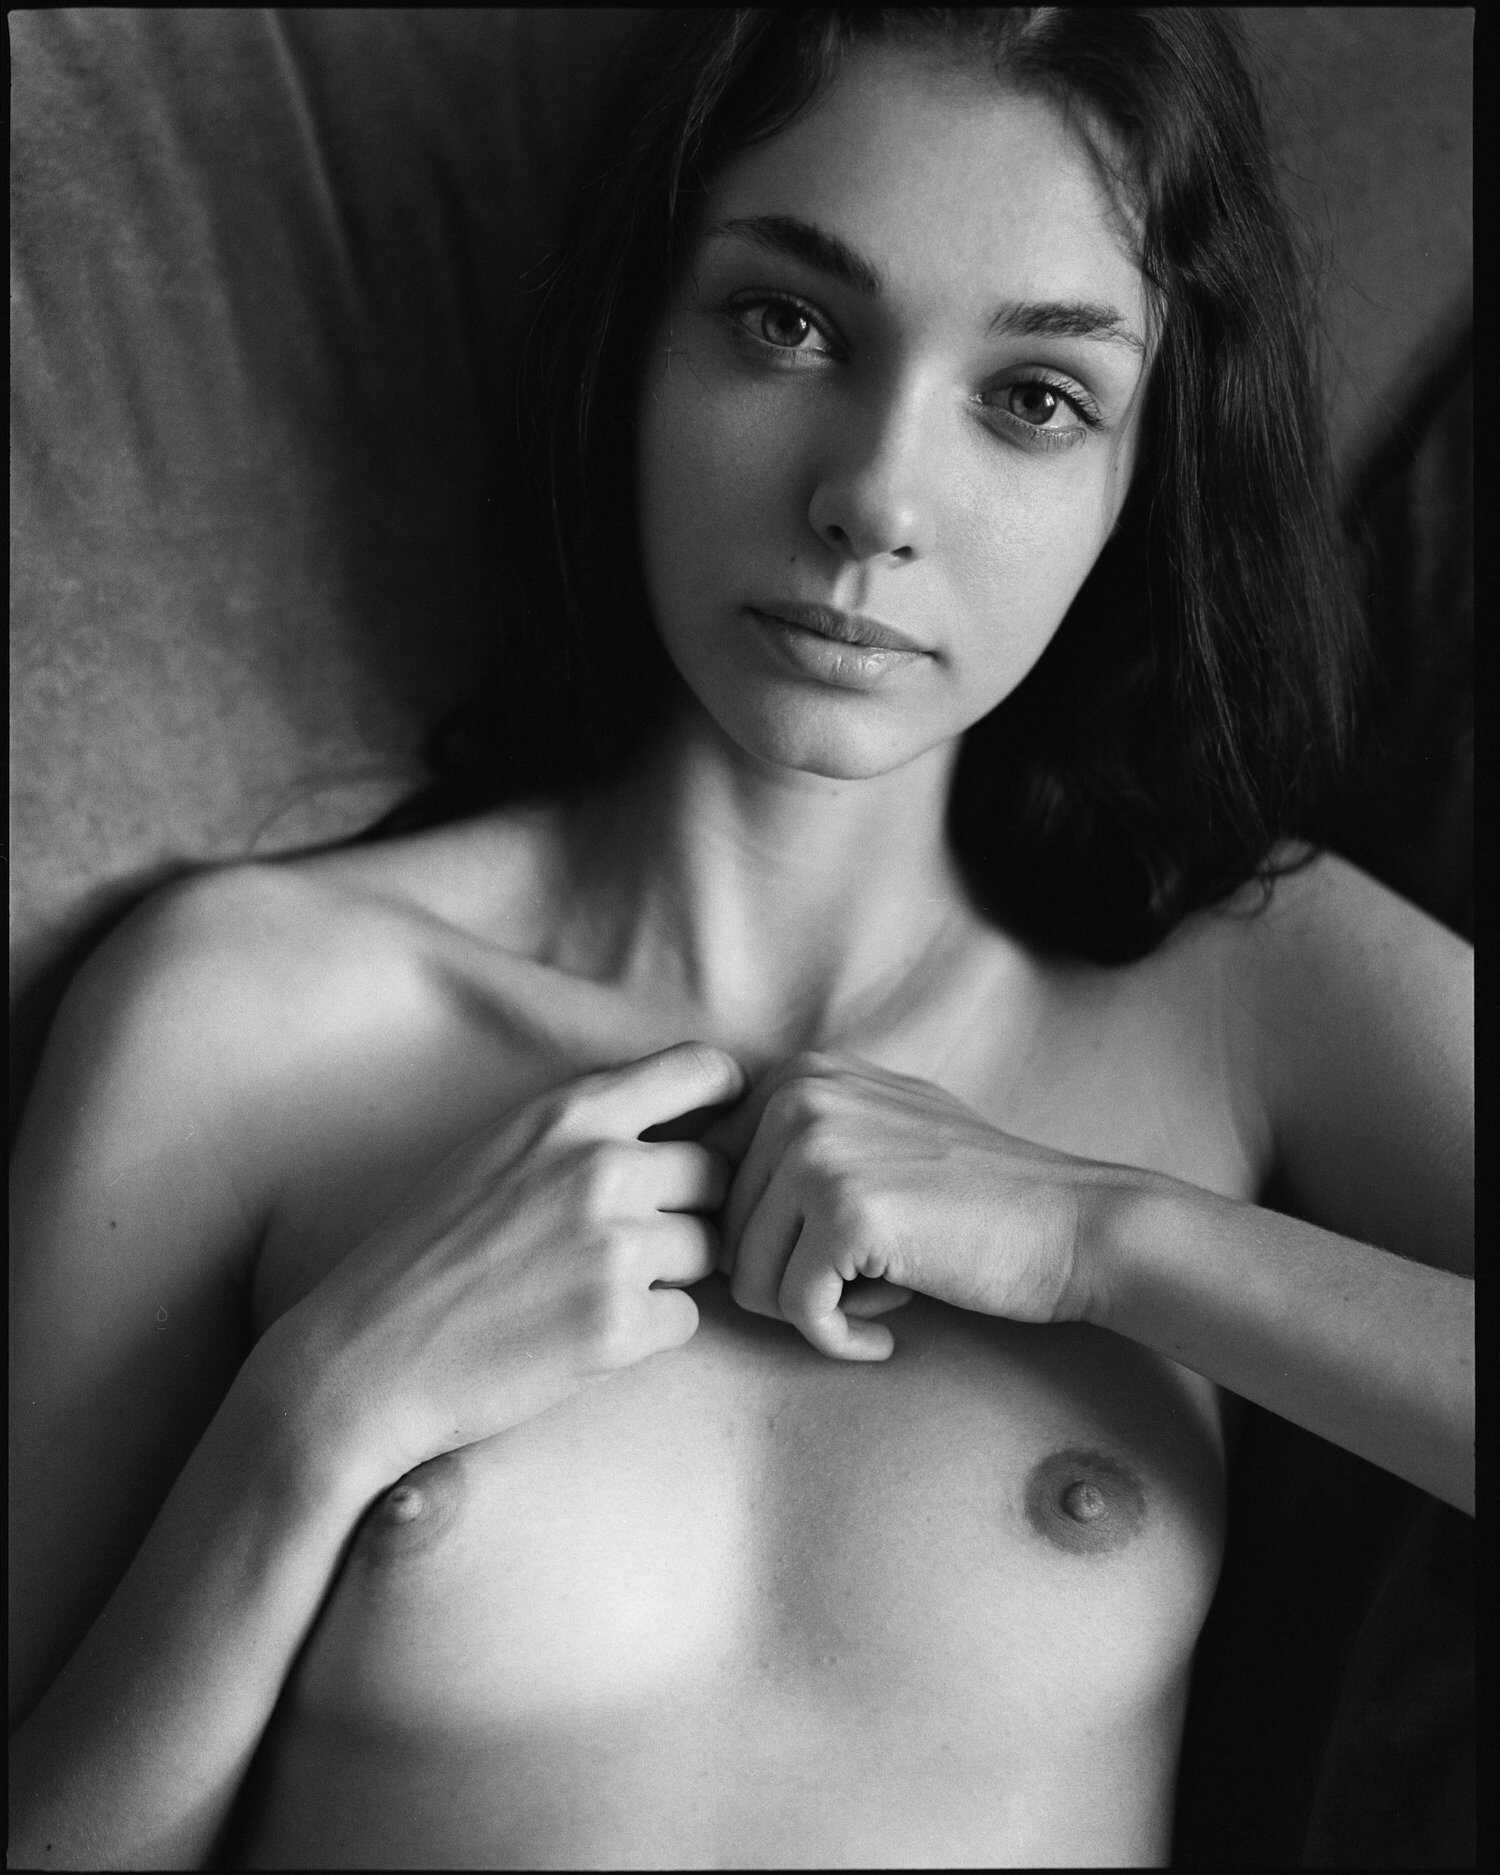 Η νεαρή μουνάρα μοντέλο Anastasia σε γυμνές φωτογραφίες